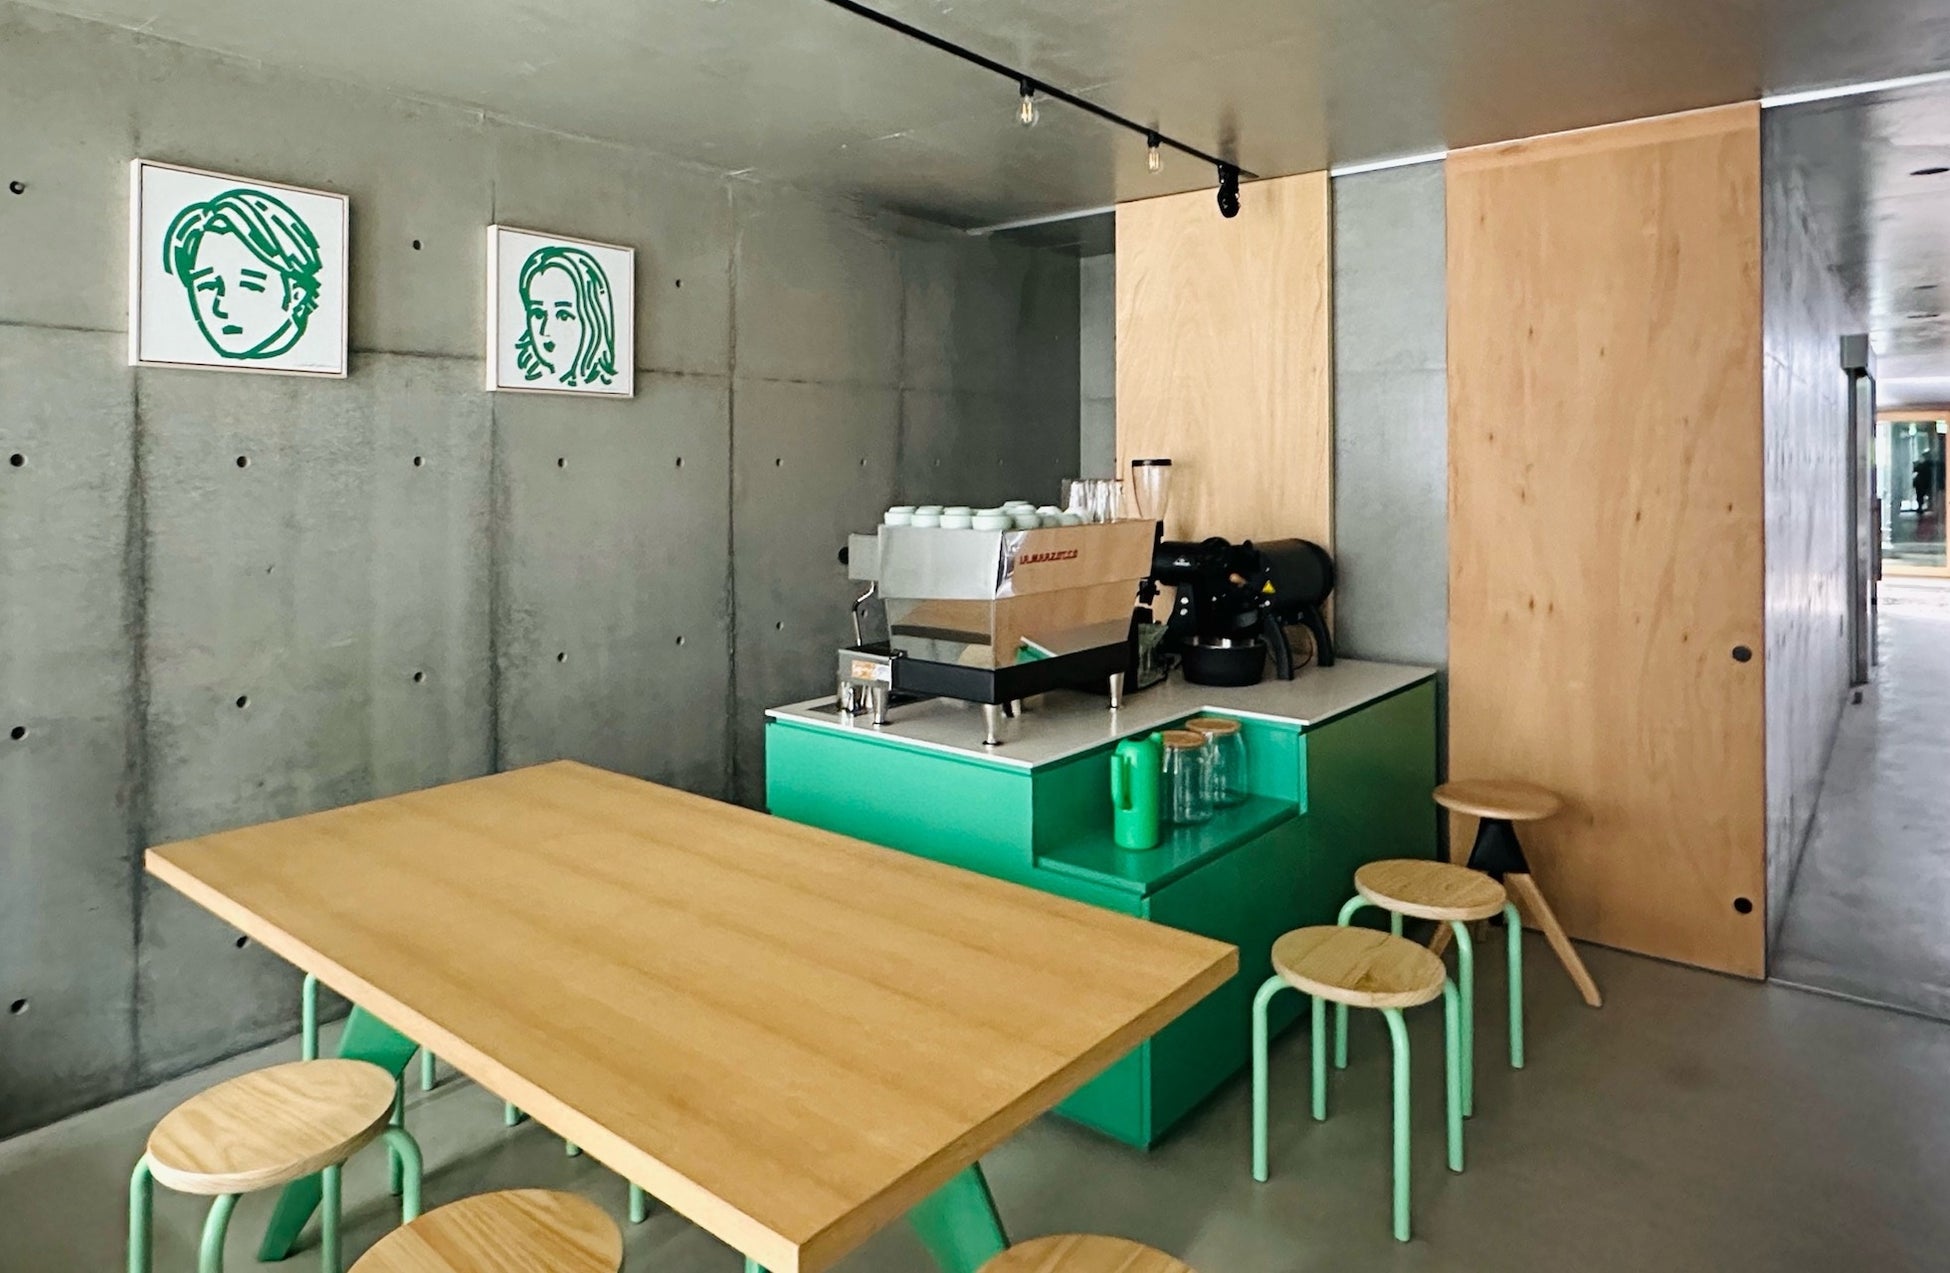 建築設計事務所KINOの新業態、京町家の軒下でクリエイターとコラボレーションするカフェ「noki noki」が7月7日にオープン